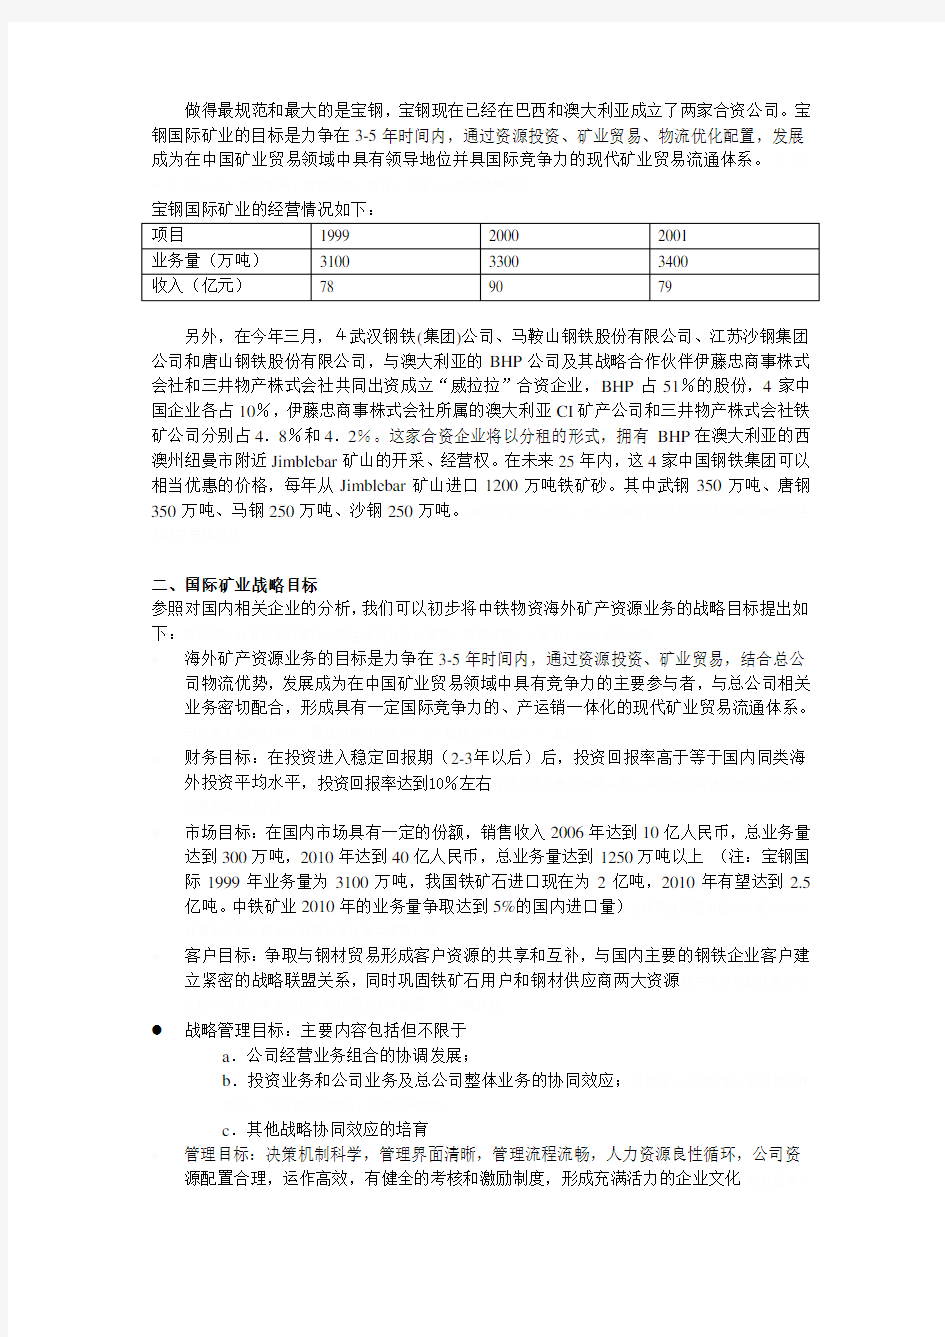 中铁物资国际矿业战略目标及措施(doc 6页)